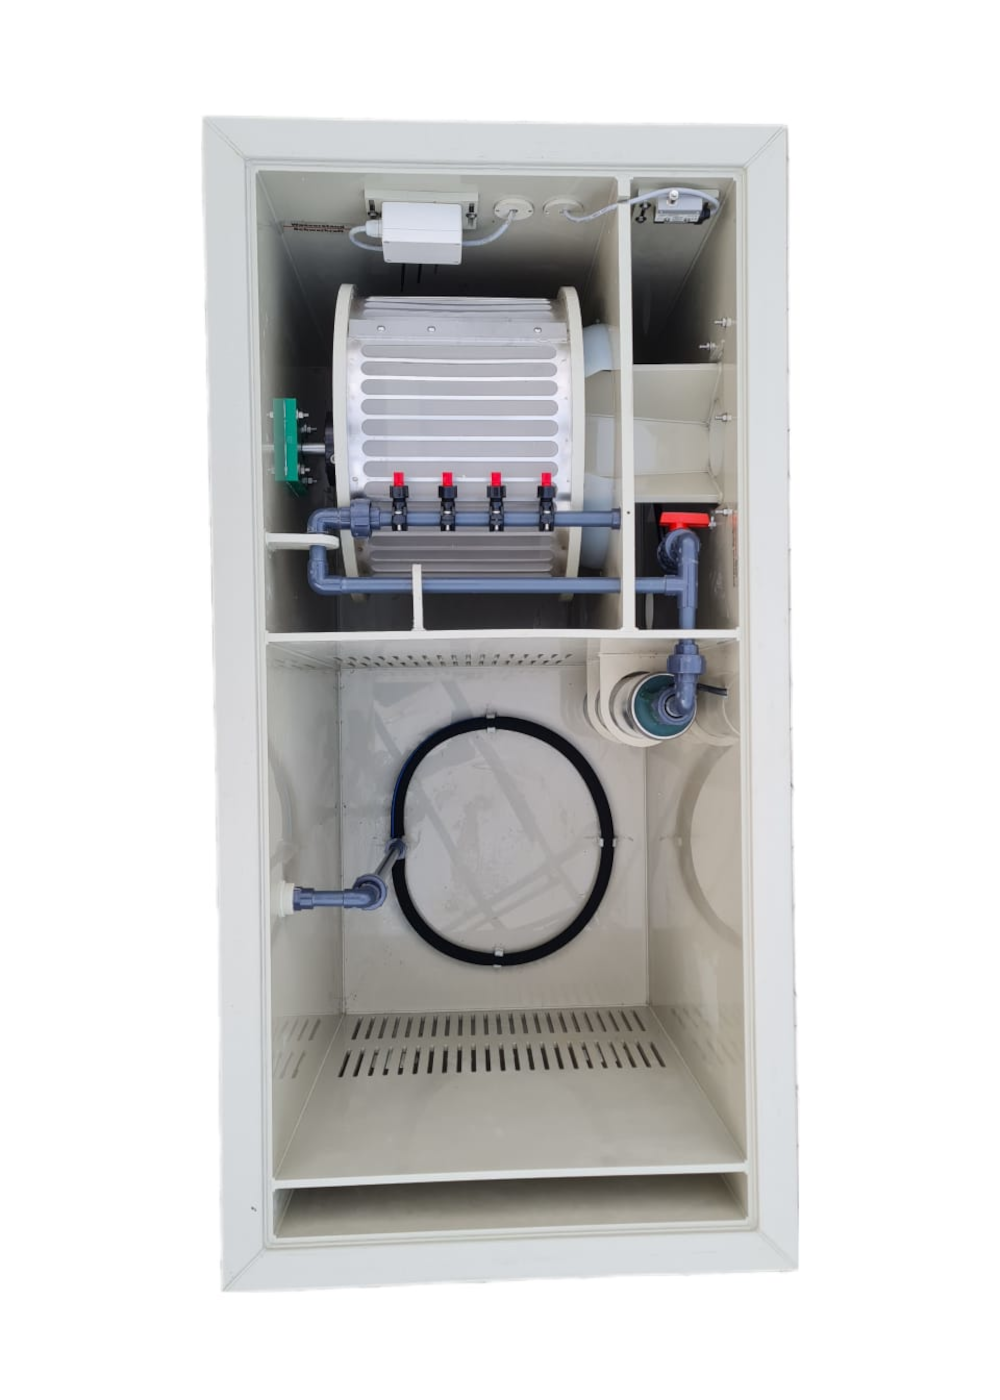 EPS Combi-Trommelfilter CL25 Quer + integrierte Biokammer + Rinnenspülung + Steuerung + Spülpumpe + UV-Schutz + Edelstahlsieb in Sandwichbauweise